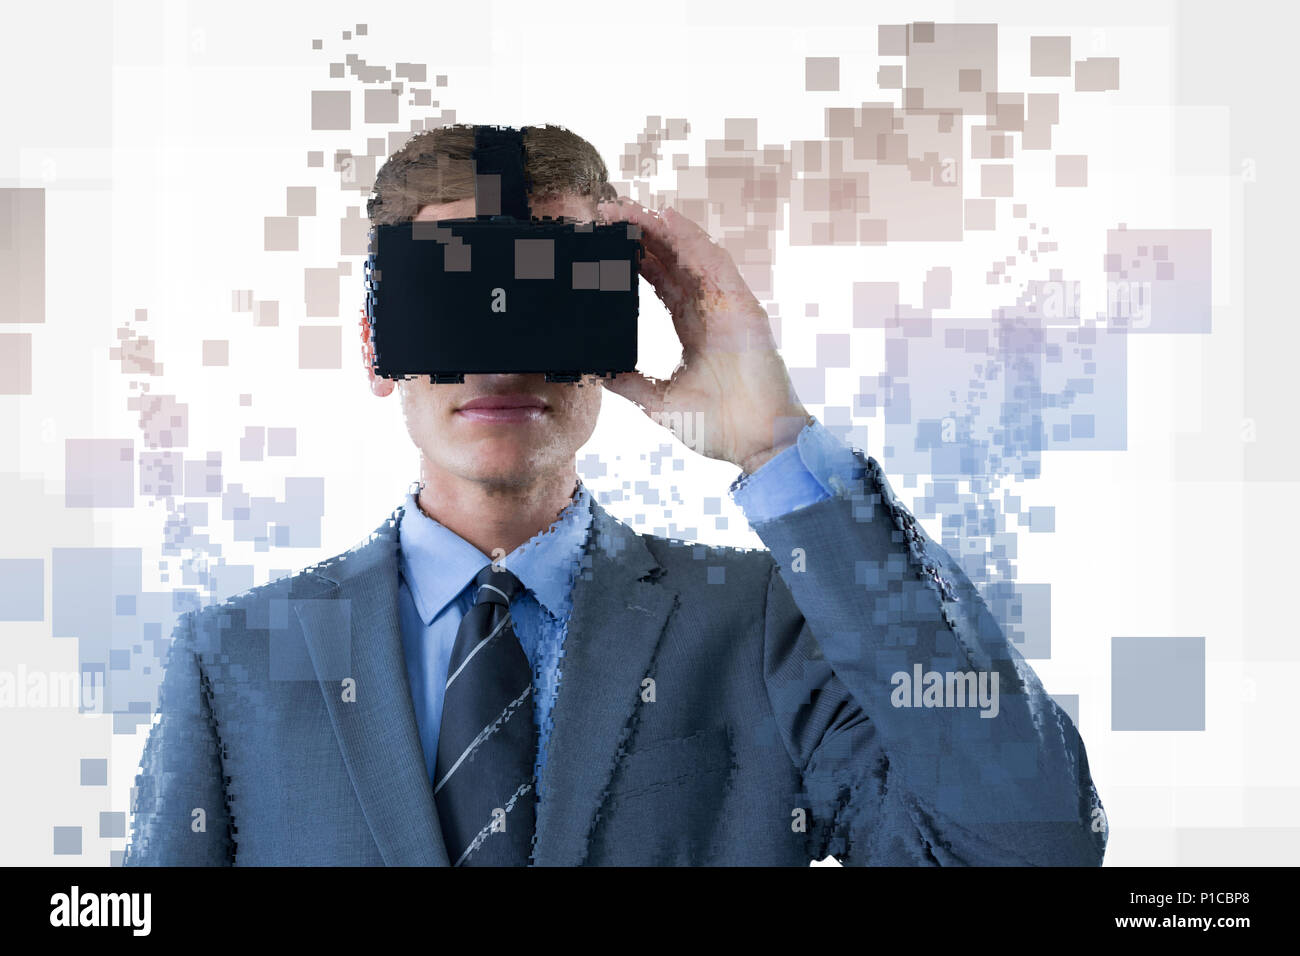 Composito Digitale dell'uomo con un'augmented reality simulator Foto Stock